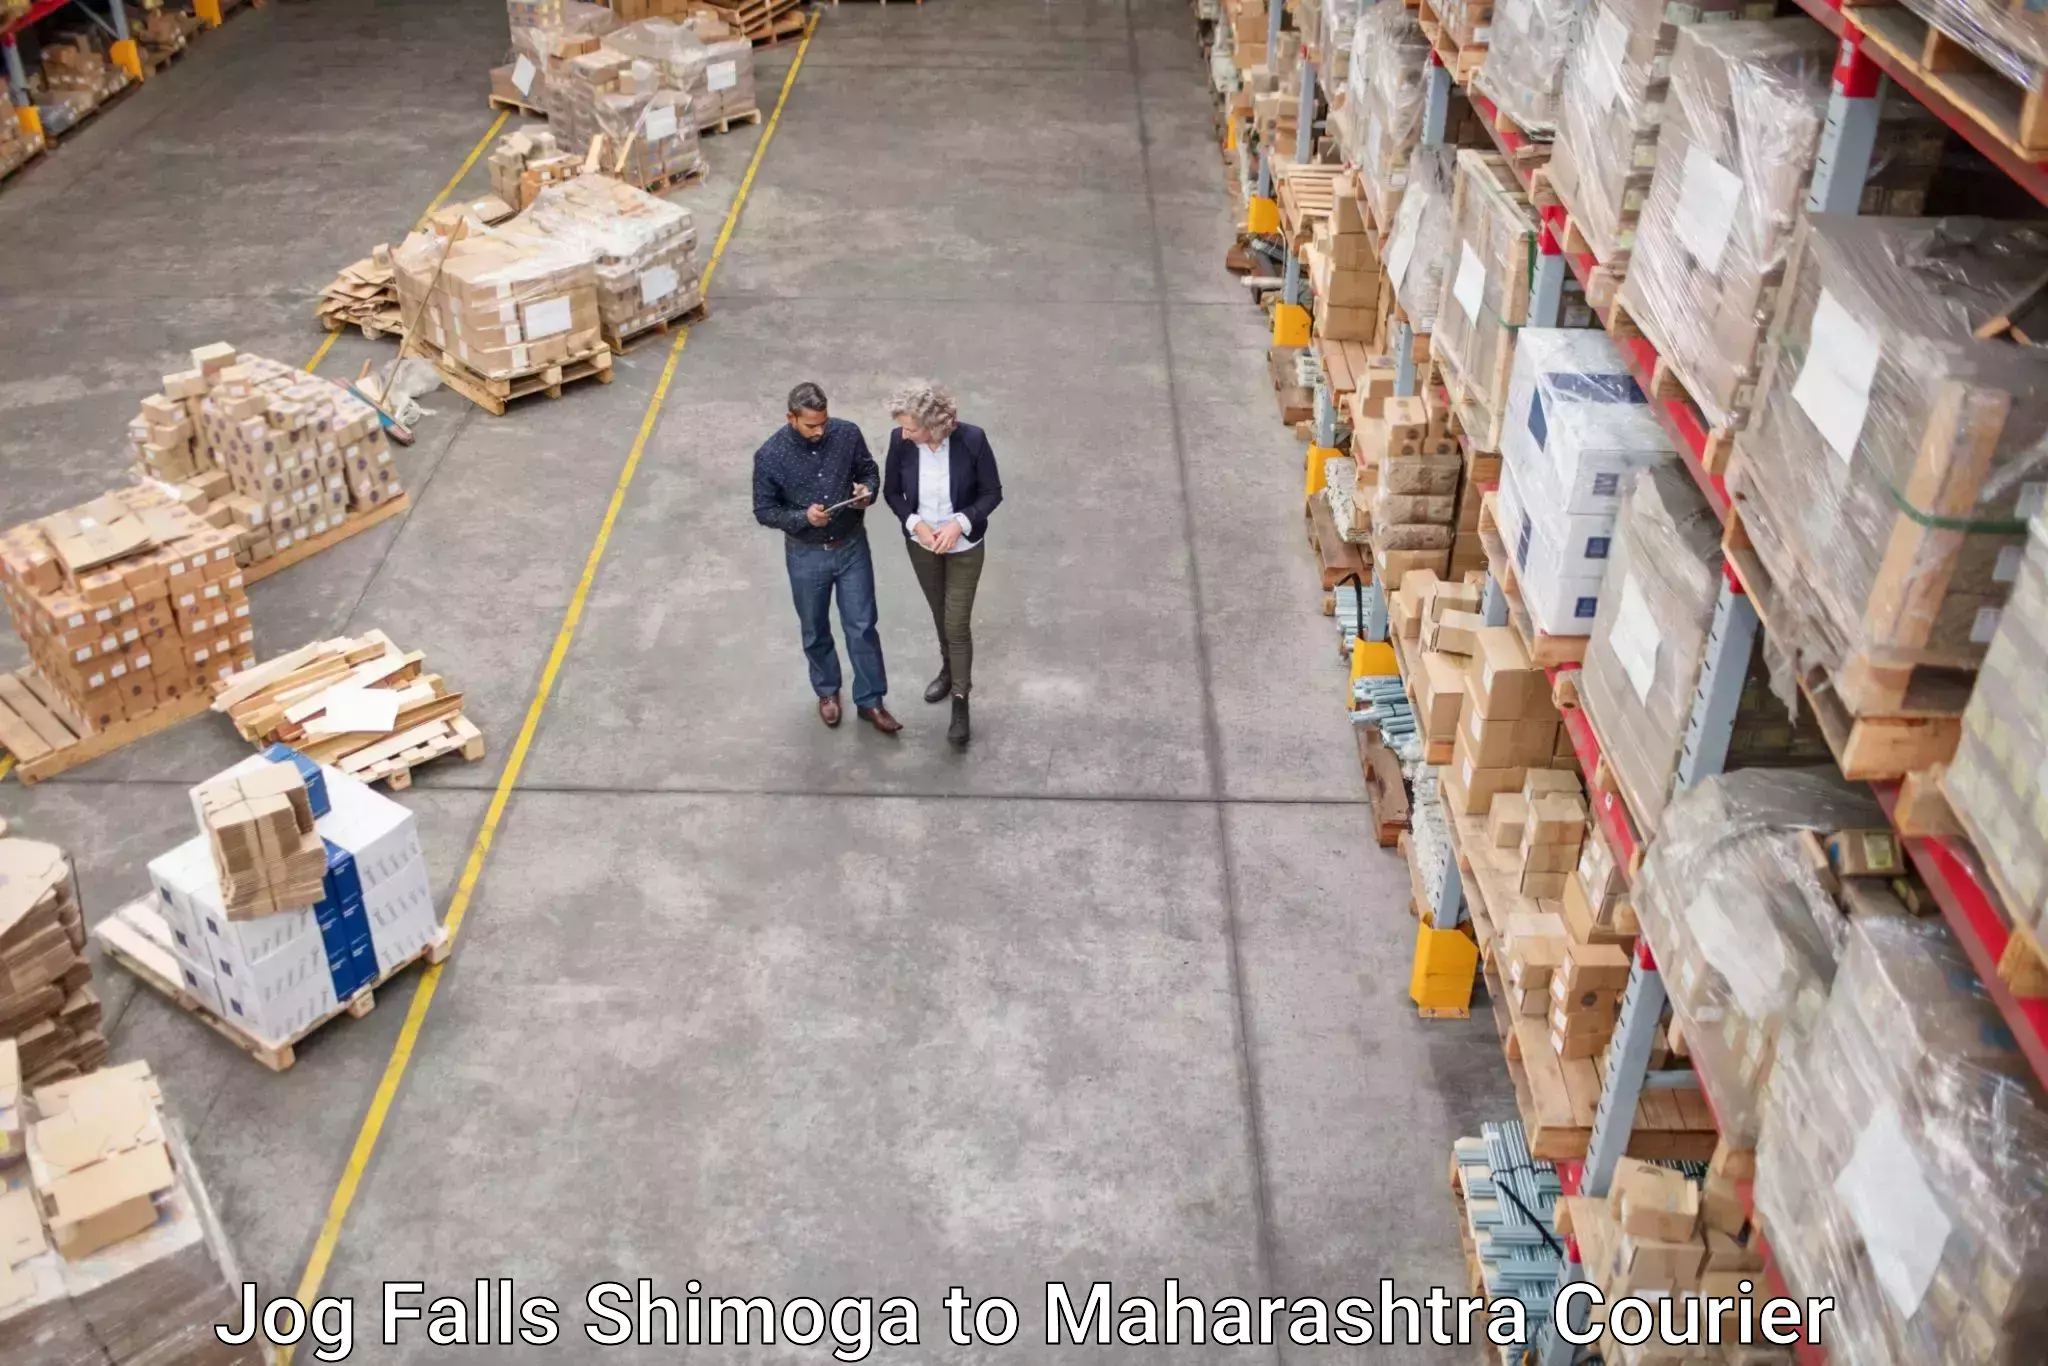 Speedy delivery service Jog Falls Shimoga to Maharashtra